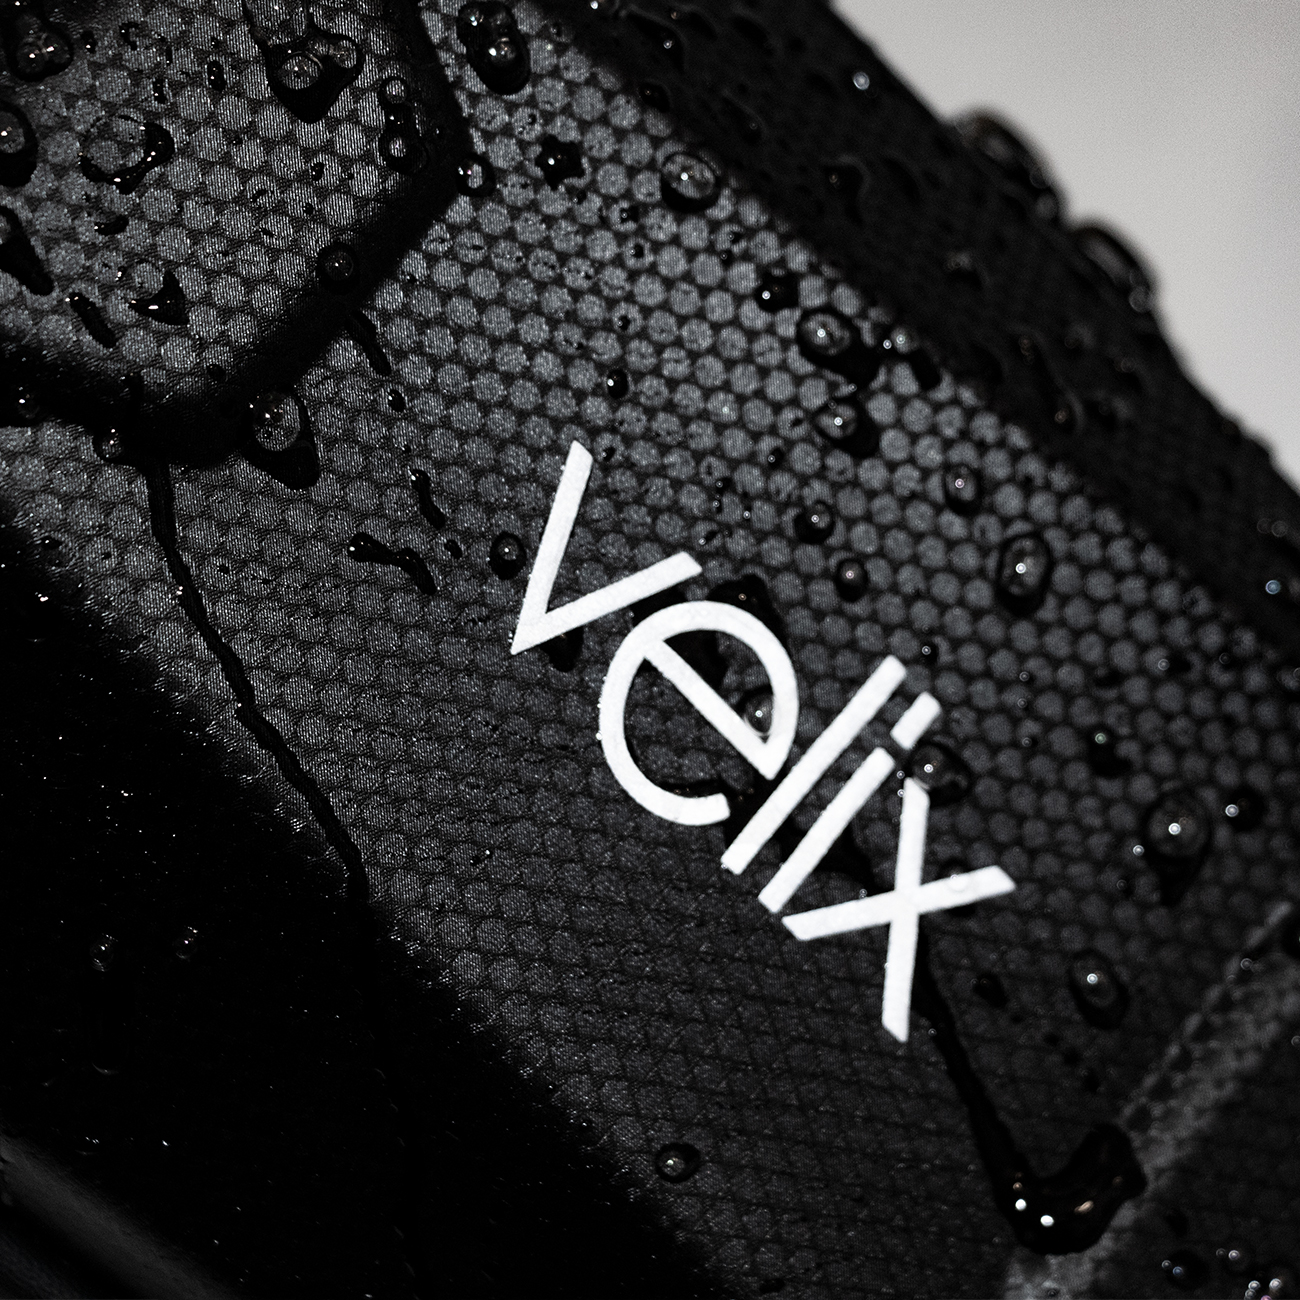 Velix-Zub., Tasche für Lenker, 30cm Länge mit Haltebänder, Schwarz, mit Logo